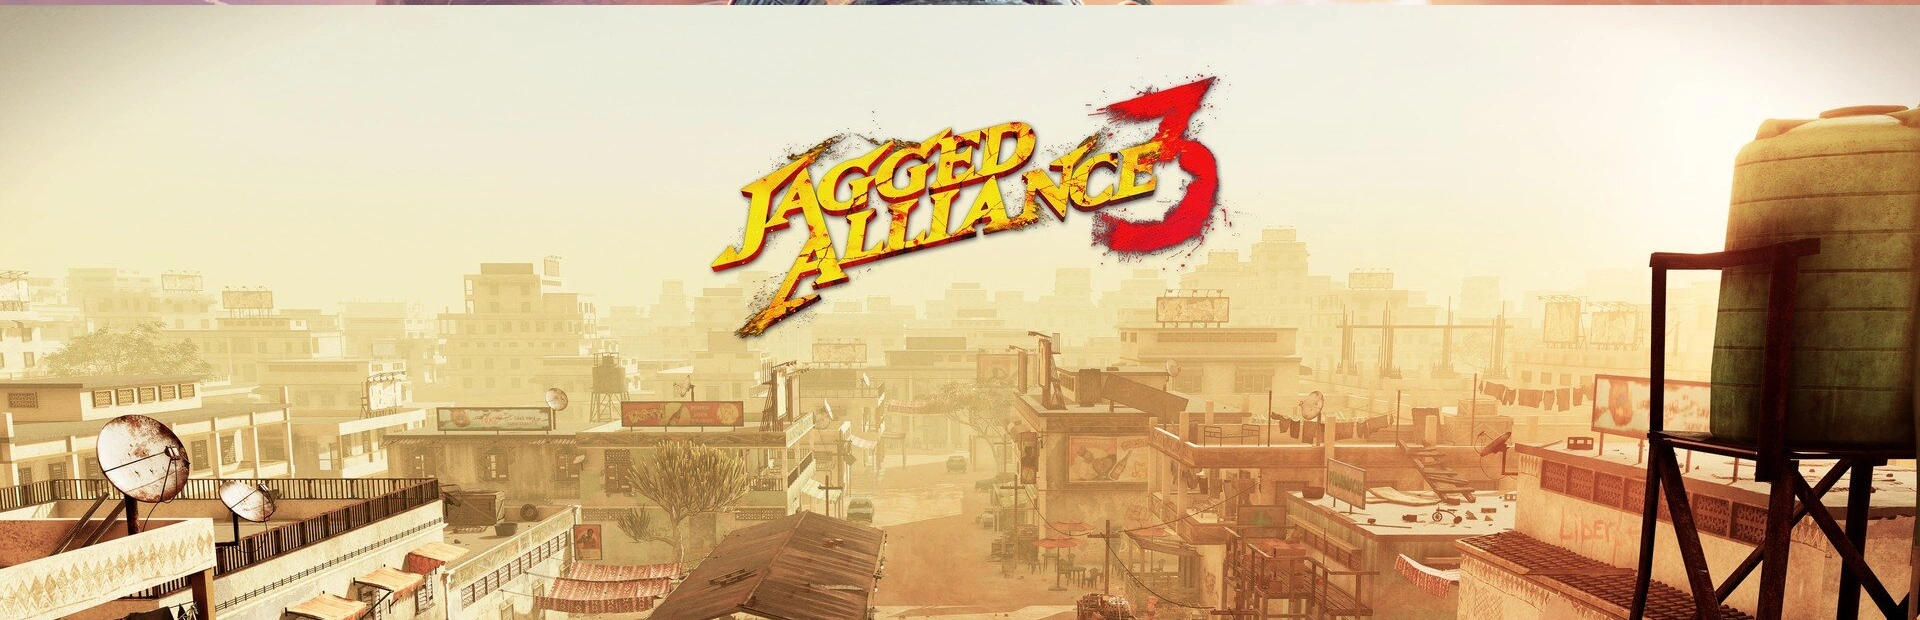 دانلود بازی Jagged Alliance 3 برای کامپیوتر | گیمباتو